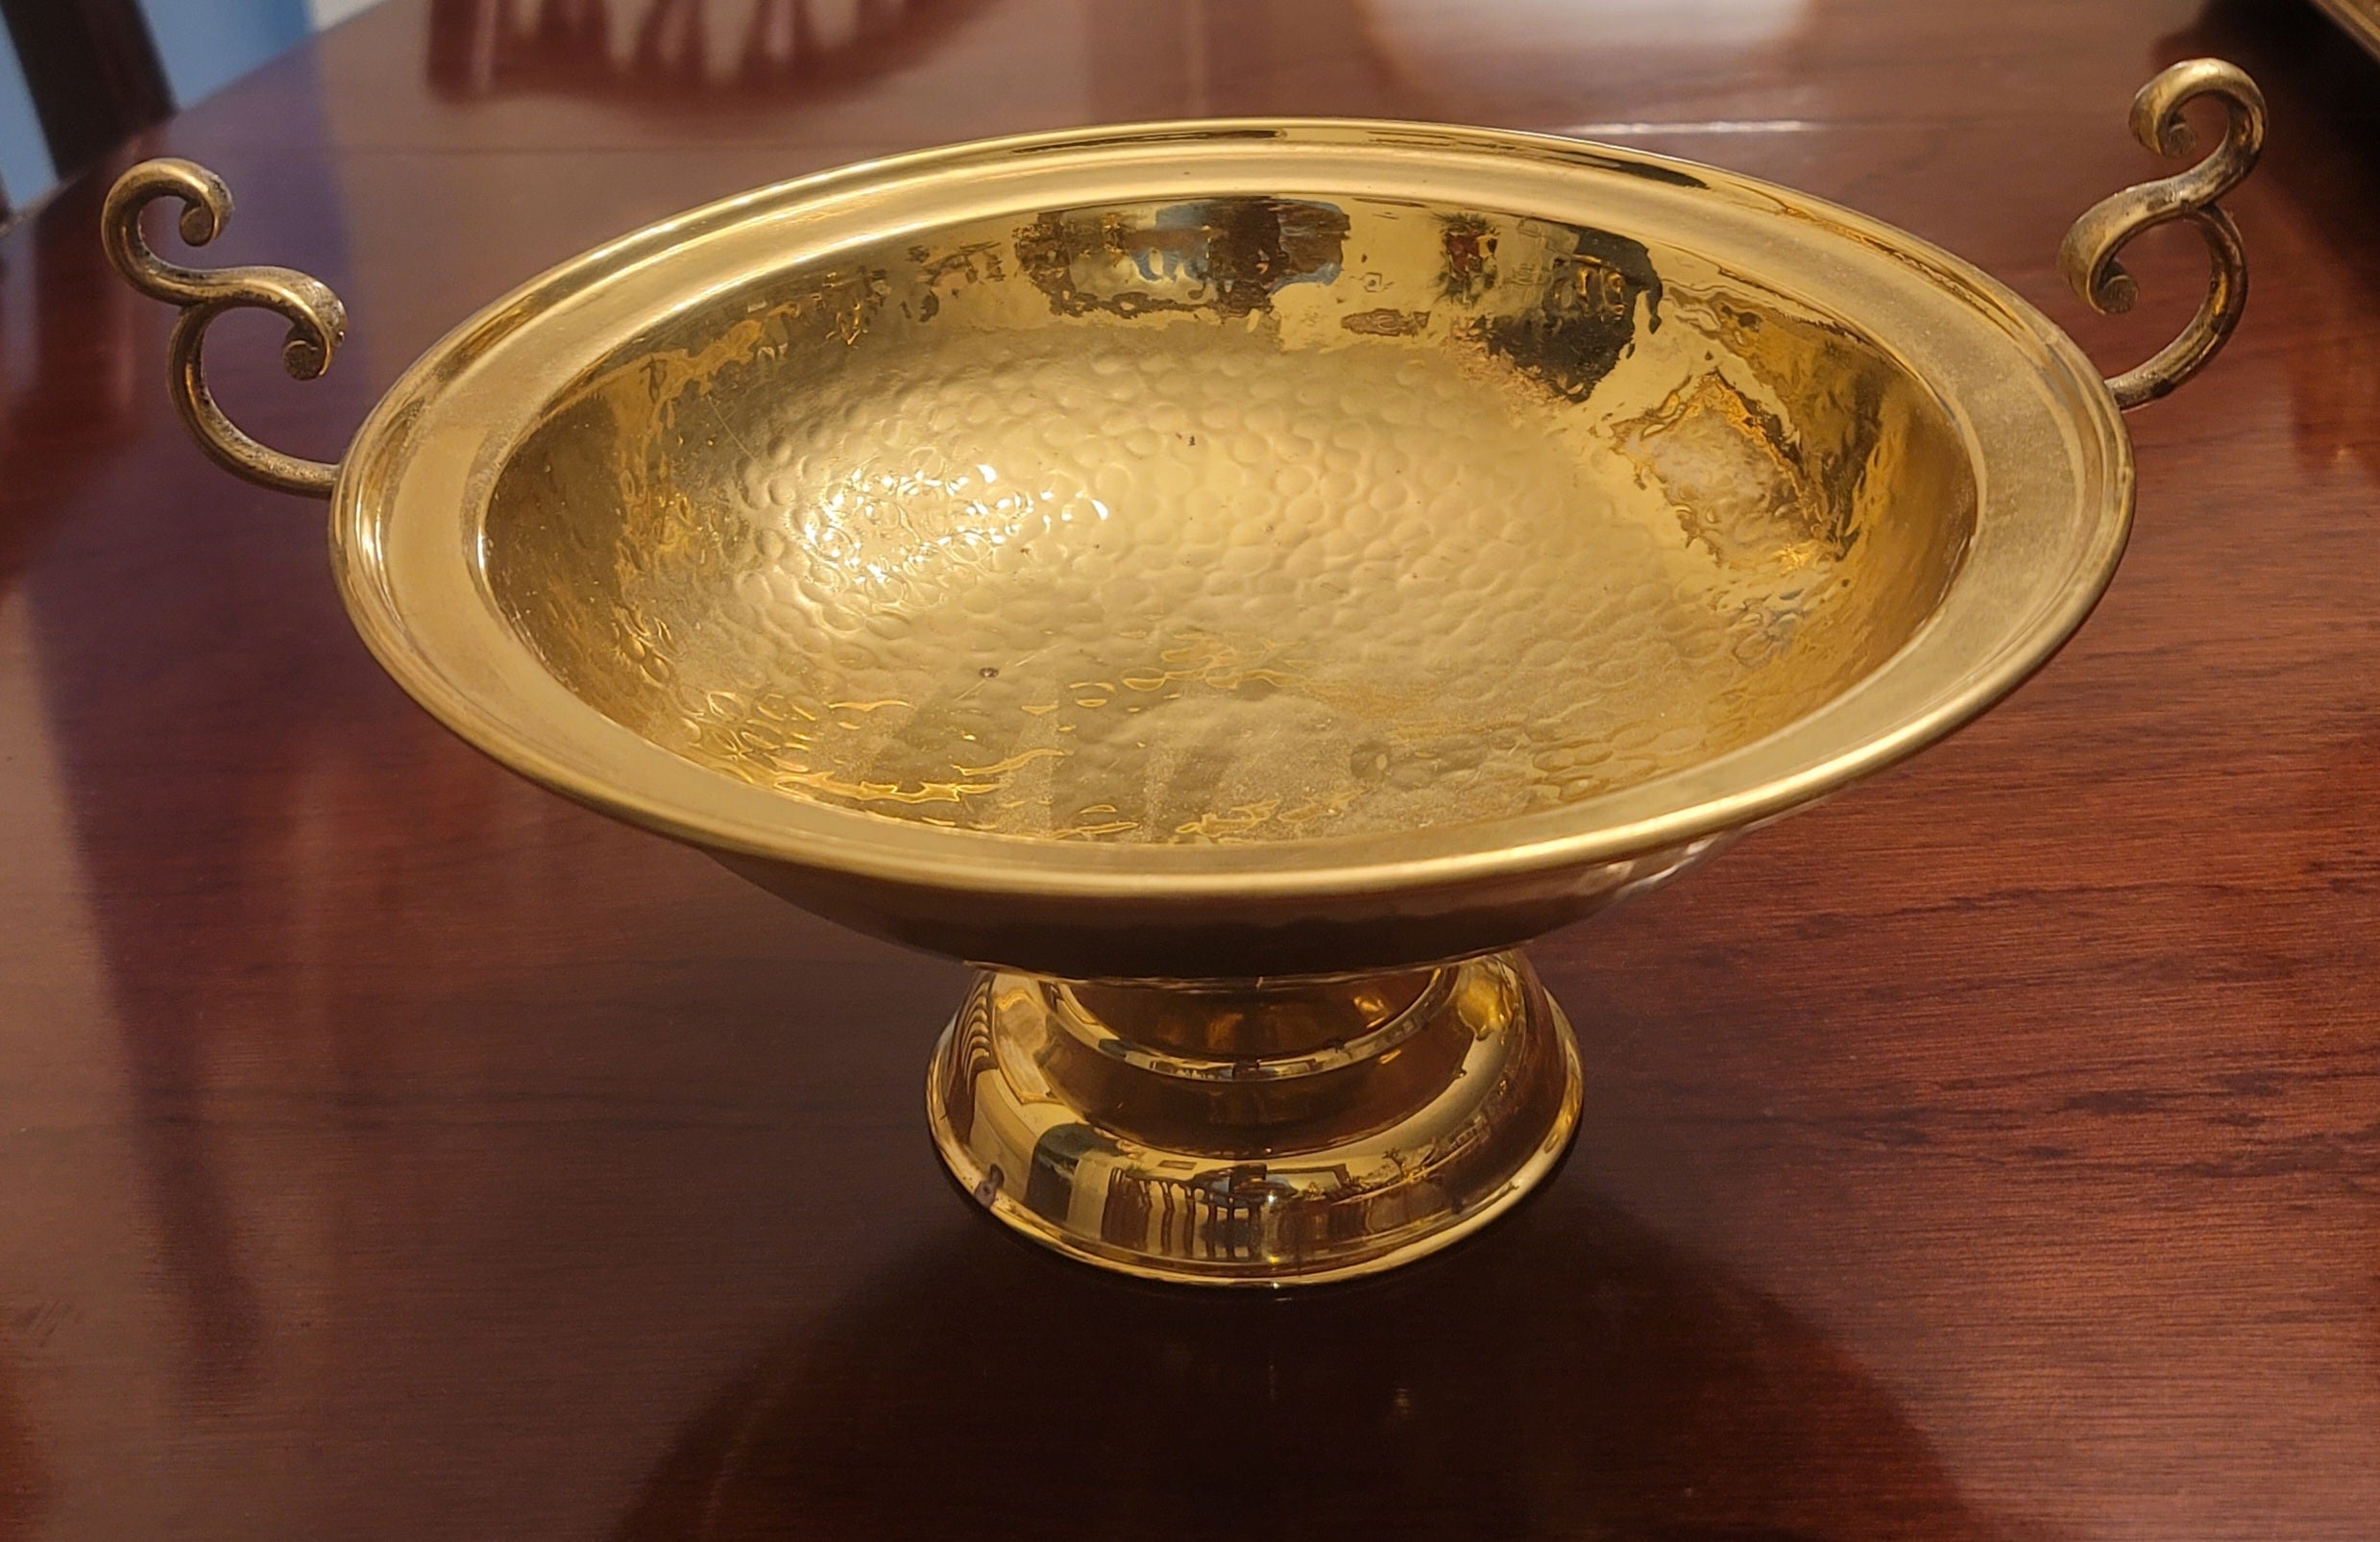 Large Ornate Engraved and Polished Brass Decorative Samovar Set For Sale 5